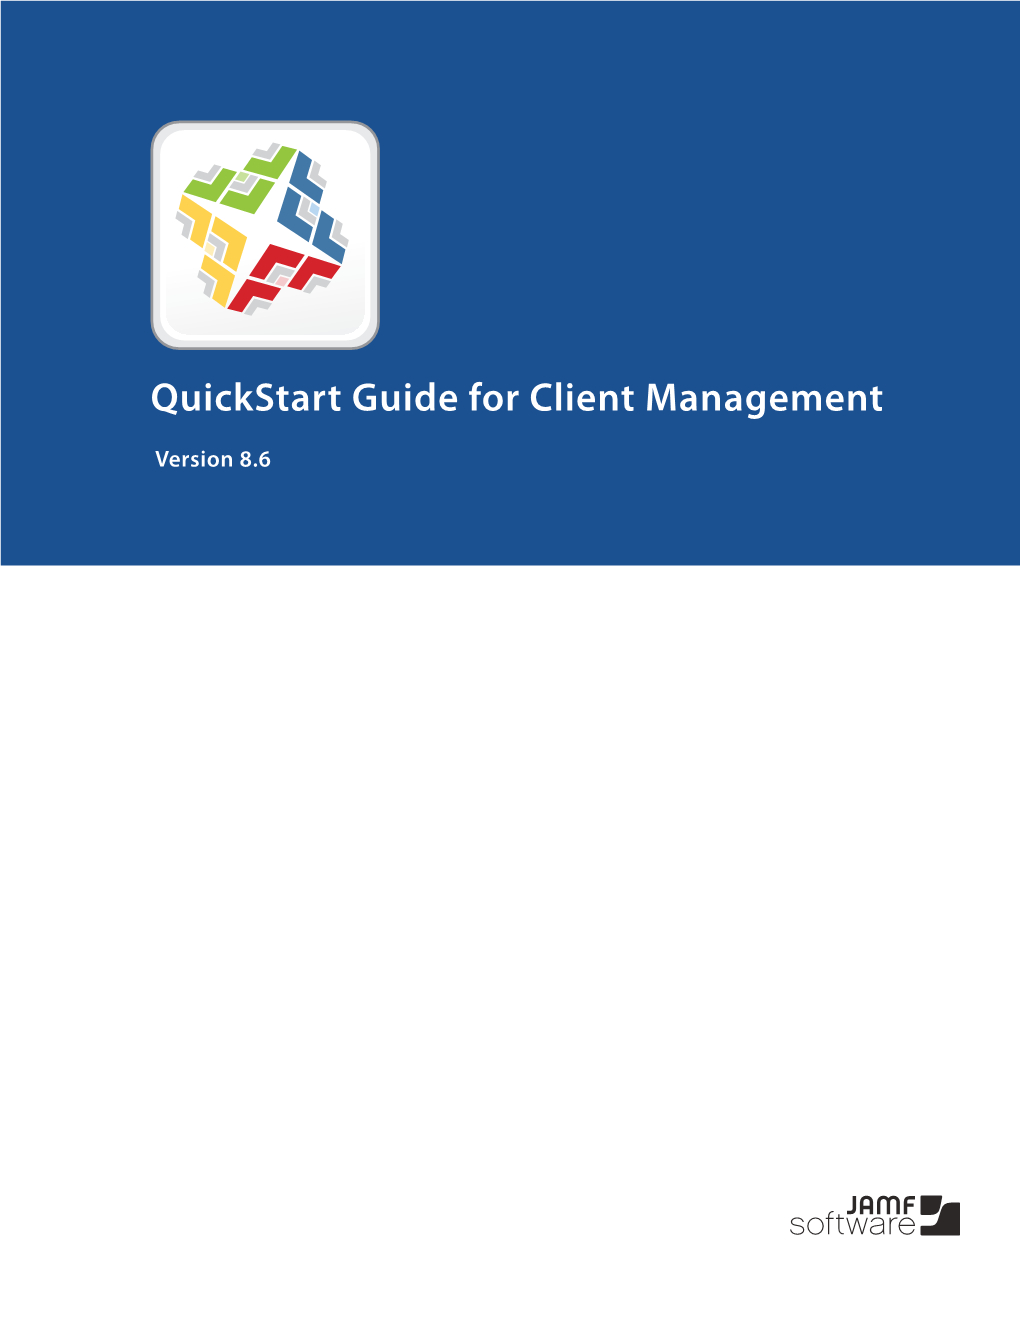 Quickstart Guide for Client Management V8.6